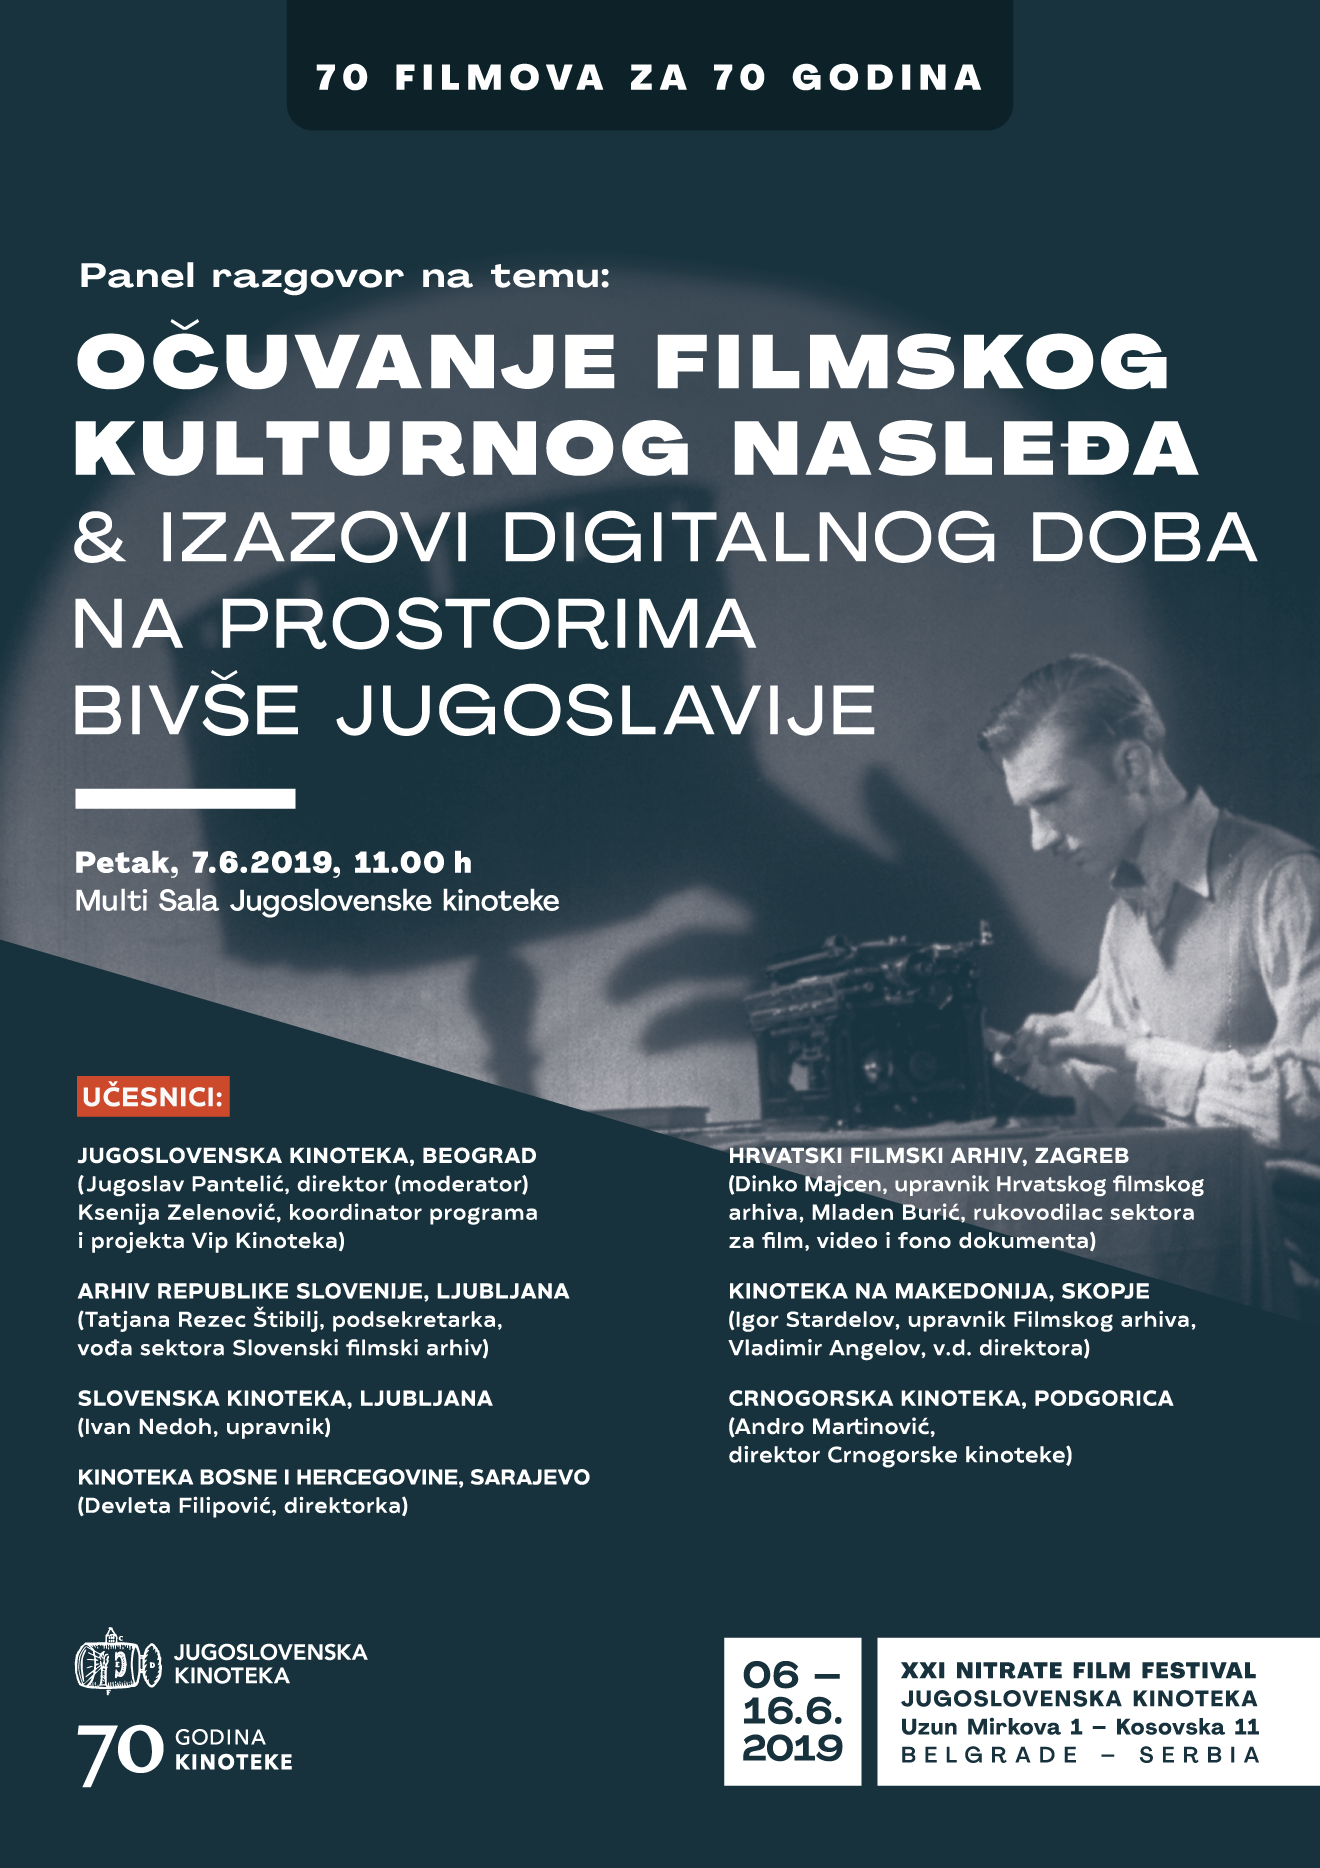 Ocuvanje filmskog kulturnog nasledja i izazovi digitalnog doba na prostorima bivse Jugoslavije